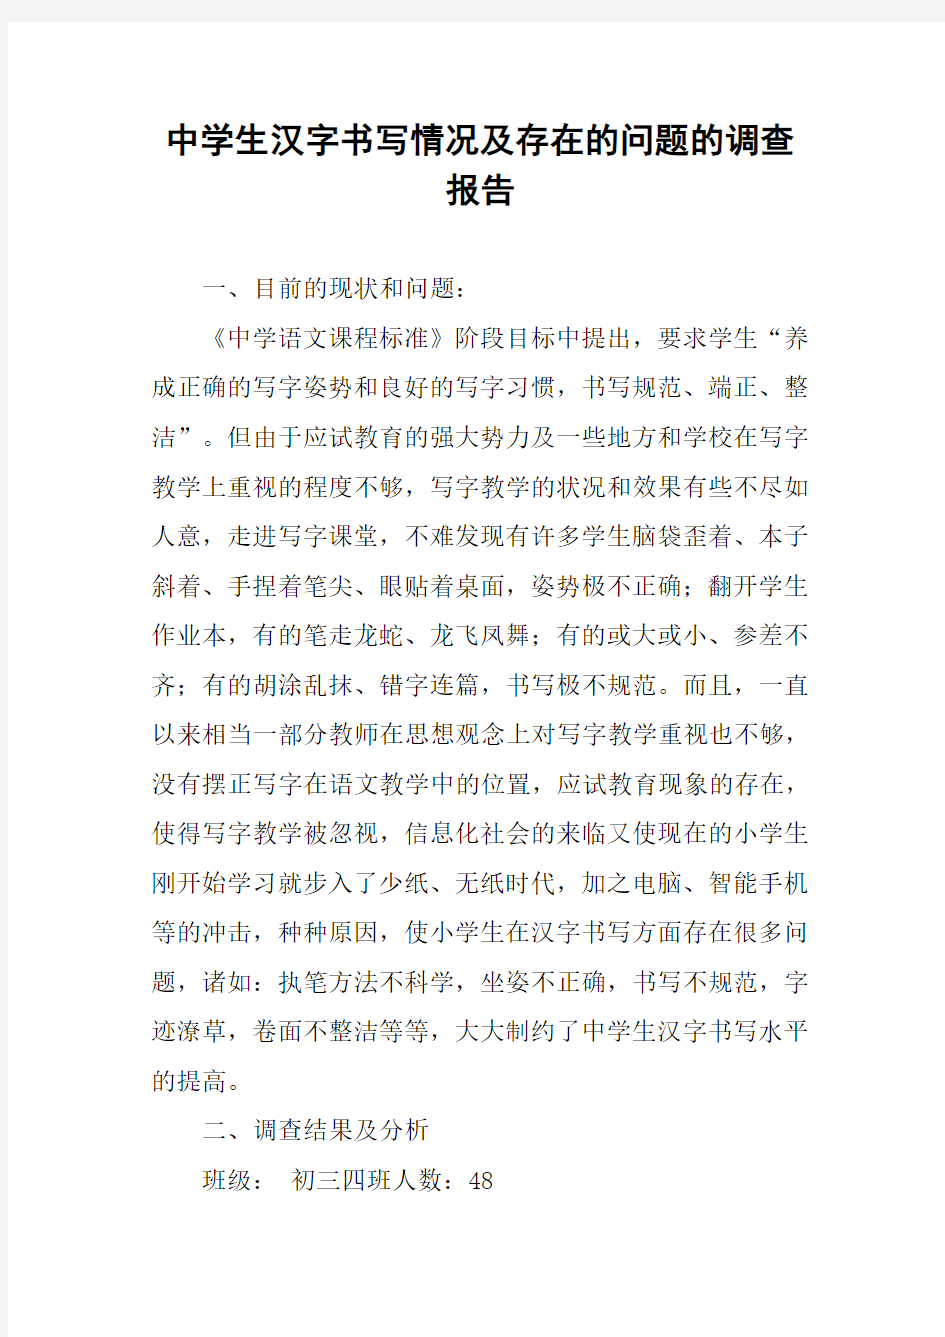 中学生汉字书写情况及存在的问题的调查报告